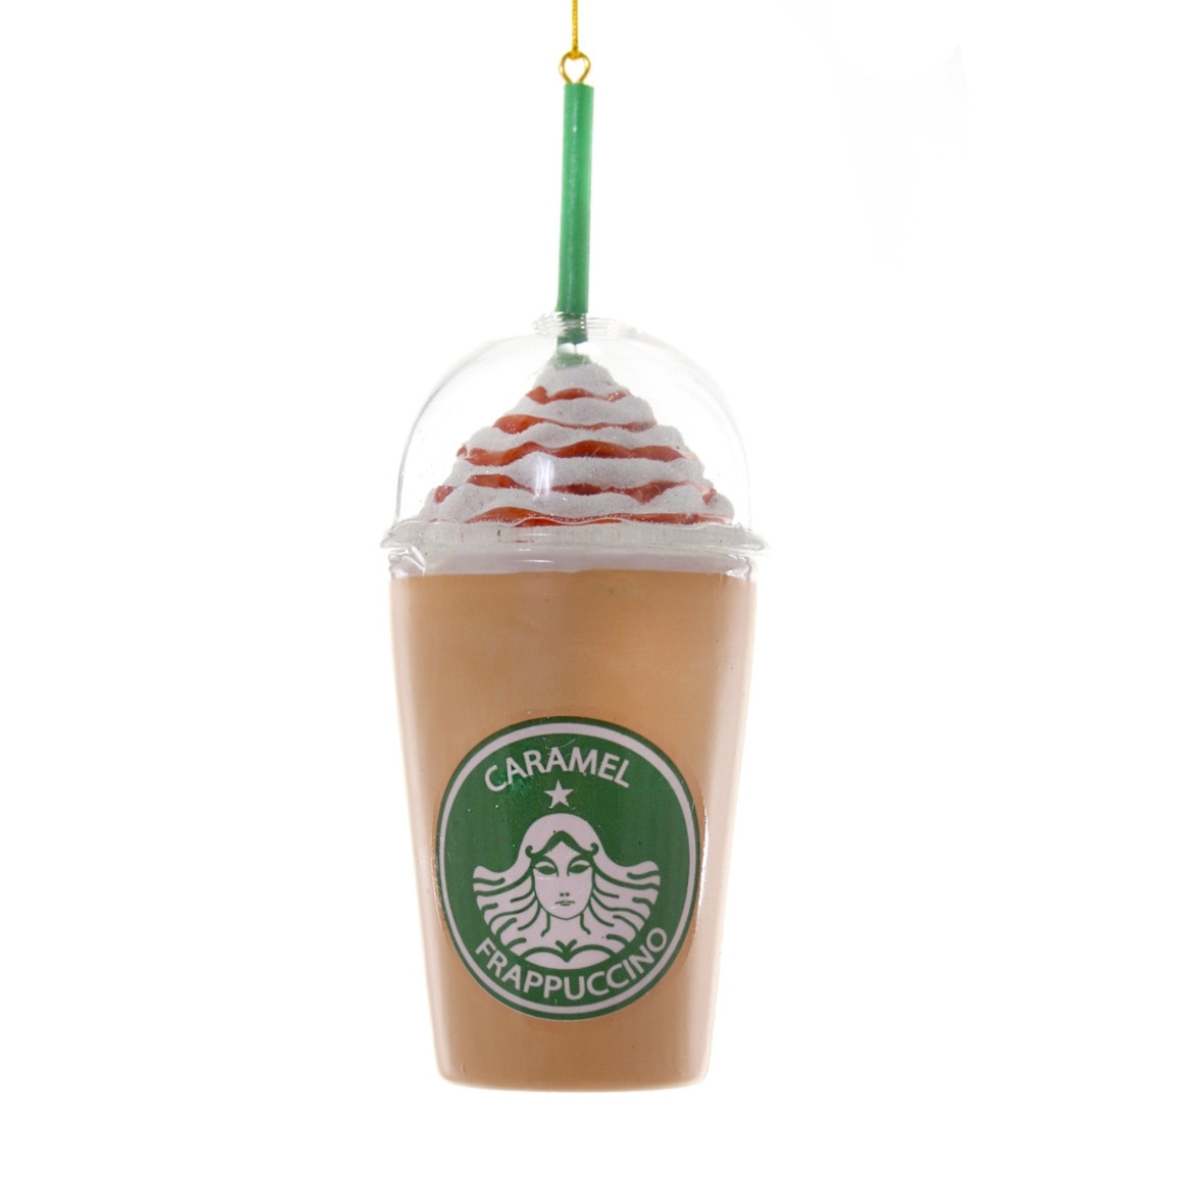 Frappuccino Caramel Tree Ornament